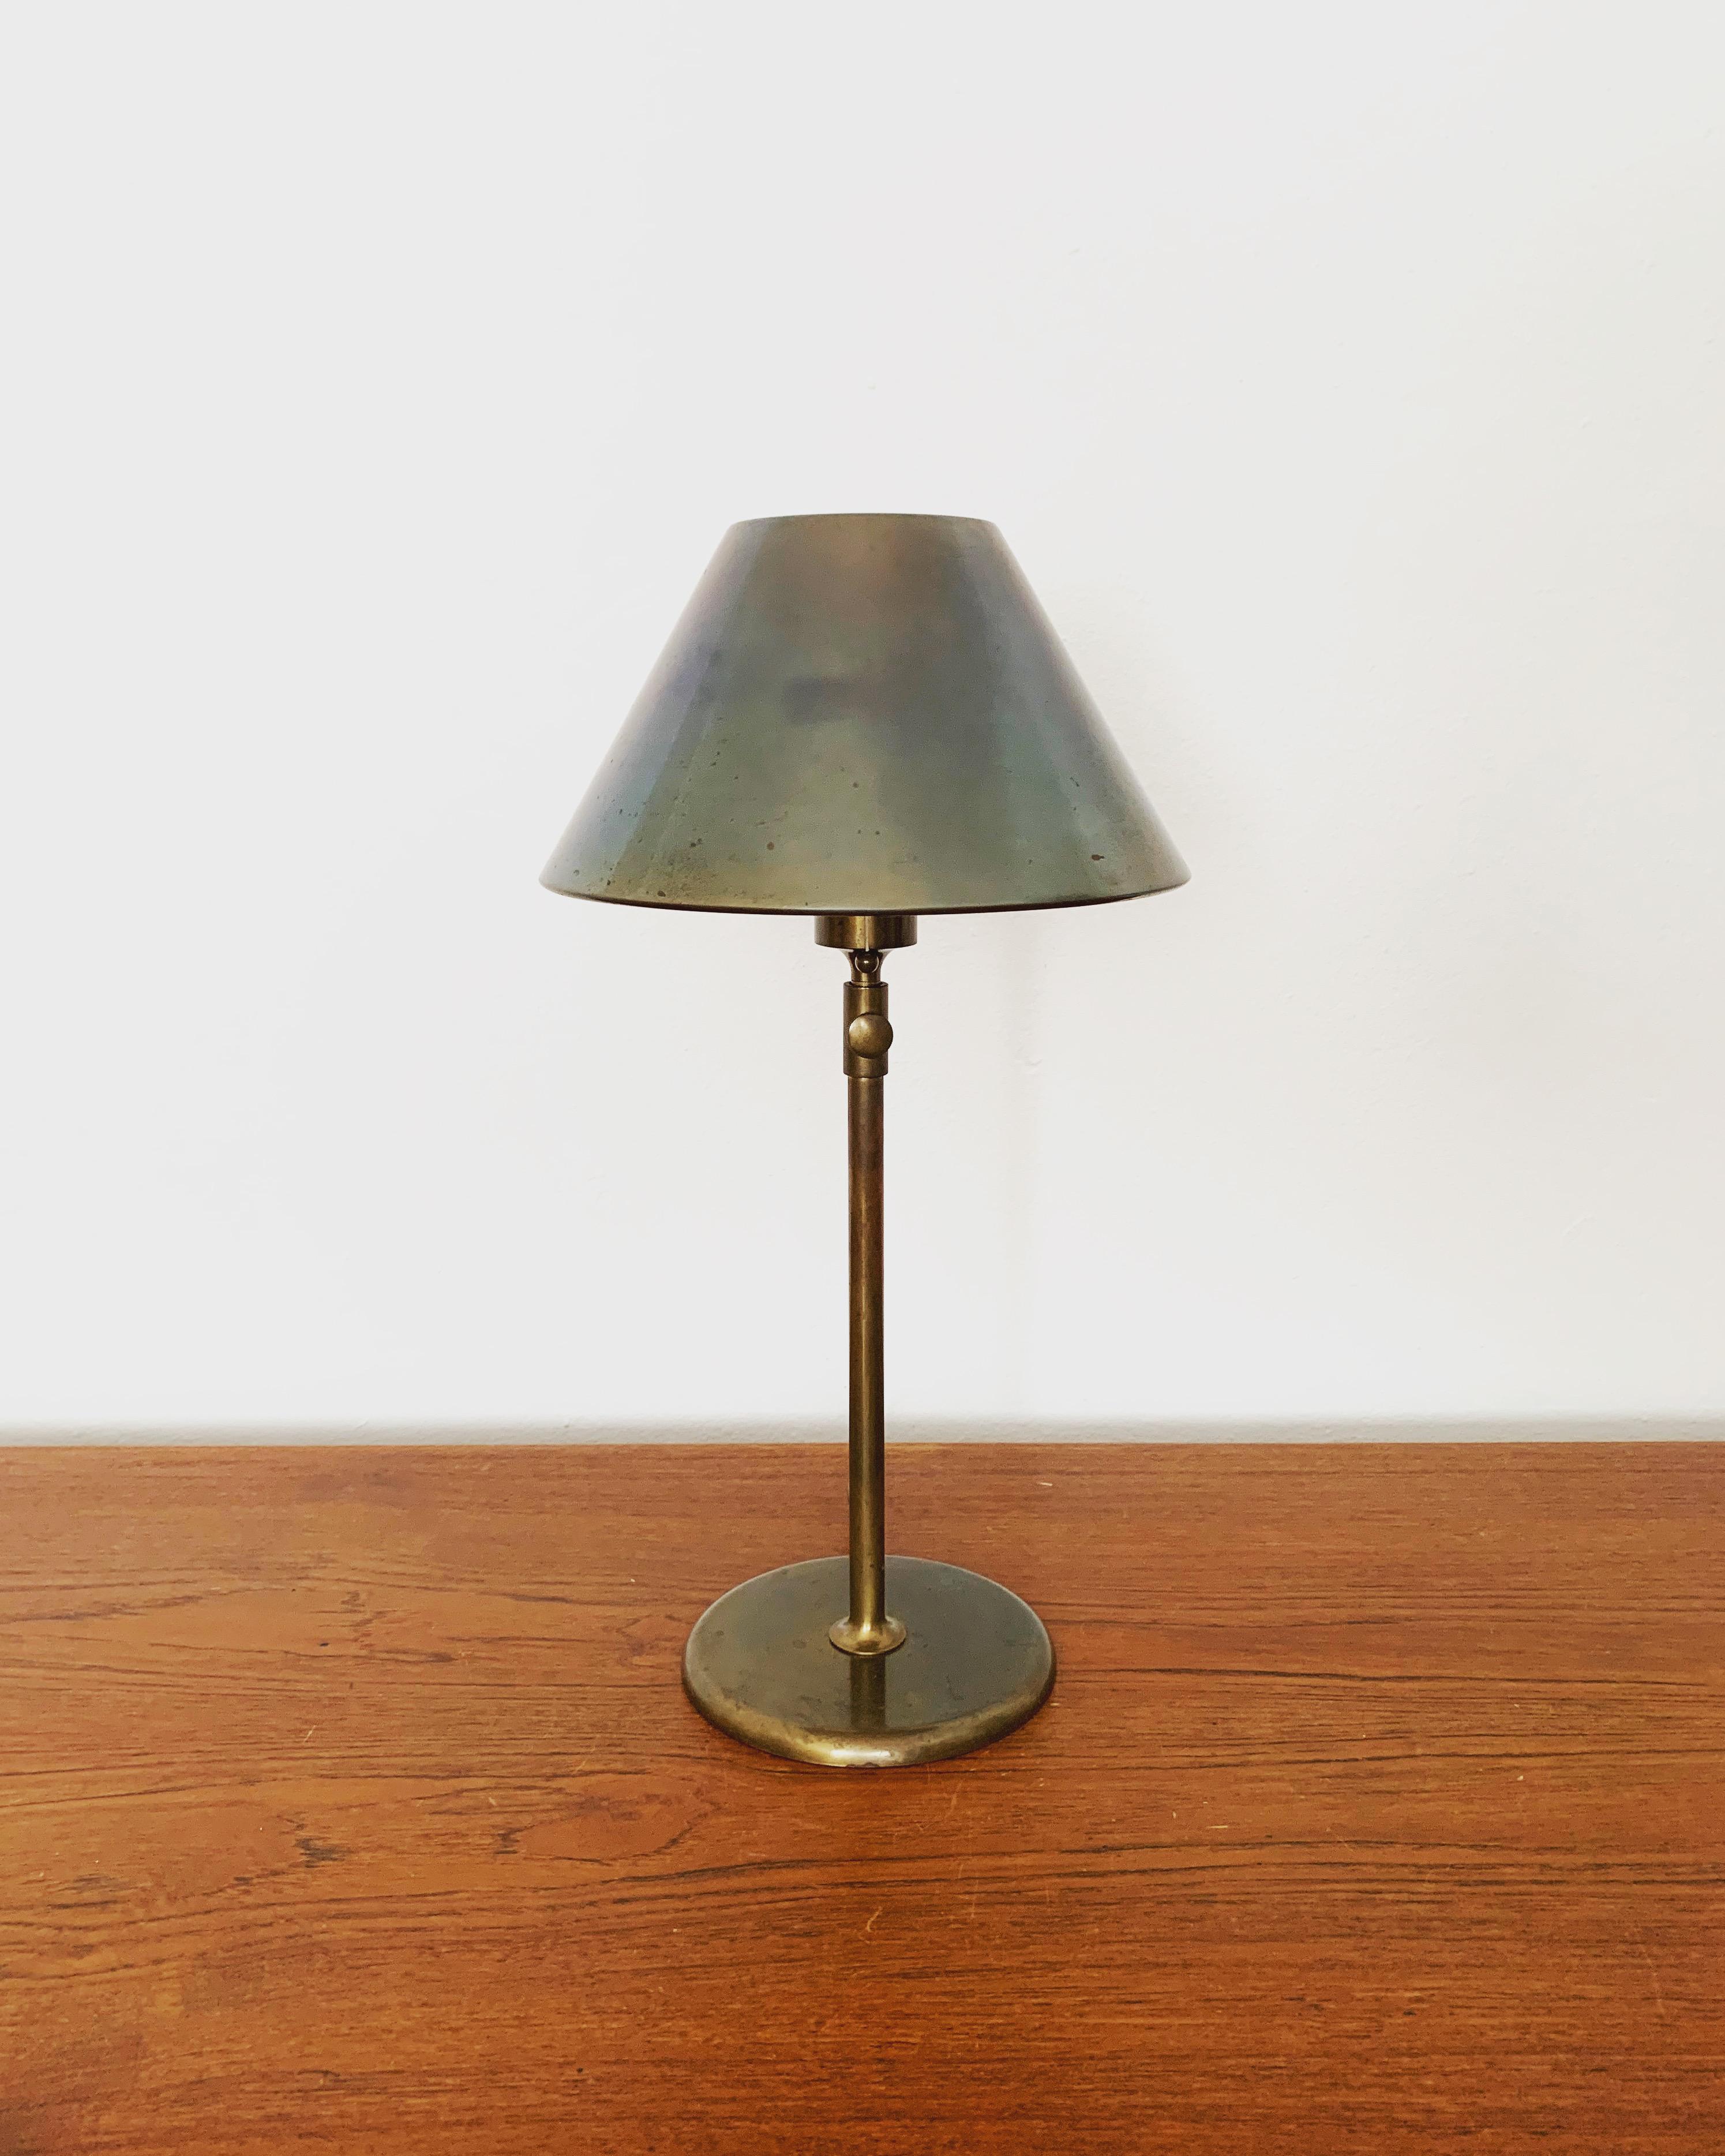 Très belle et extrêmement rare lampe de table en laiton à hauteur réglable des années 1970.
Le design et les très beaux détails créent une lumière très noble et agréable.
La lampe crée une atmosphère très confortable et est de très haute